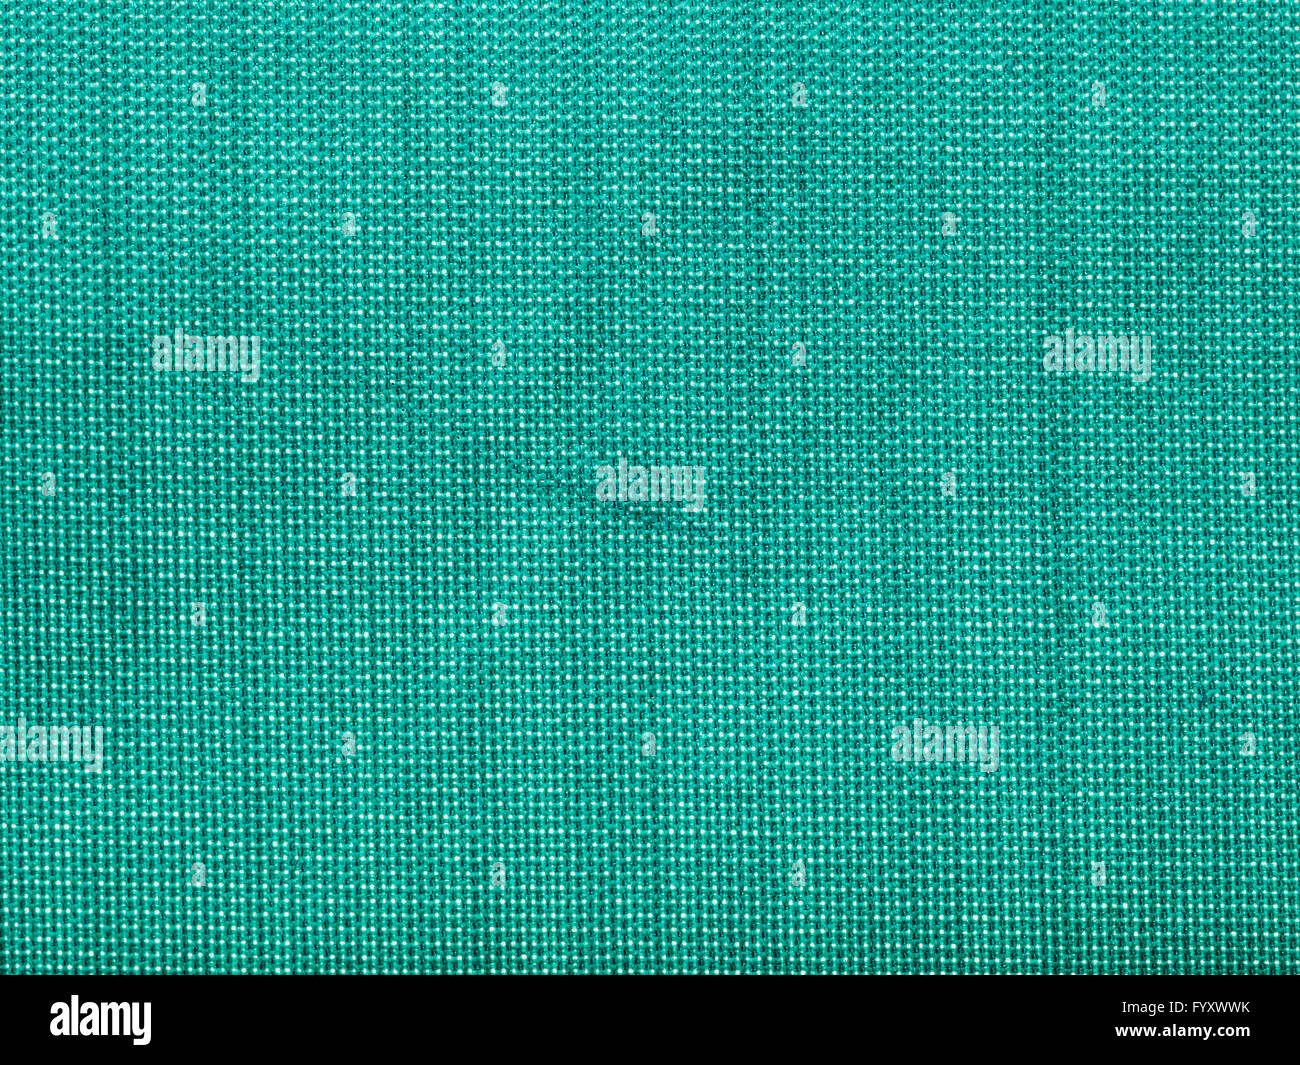 Arrière-plan de textiles - Tissus taffetas de soie verte avec motif de tissage de fils close up Banque D'Images